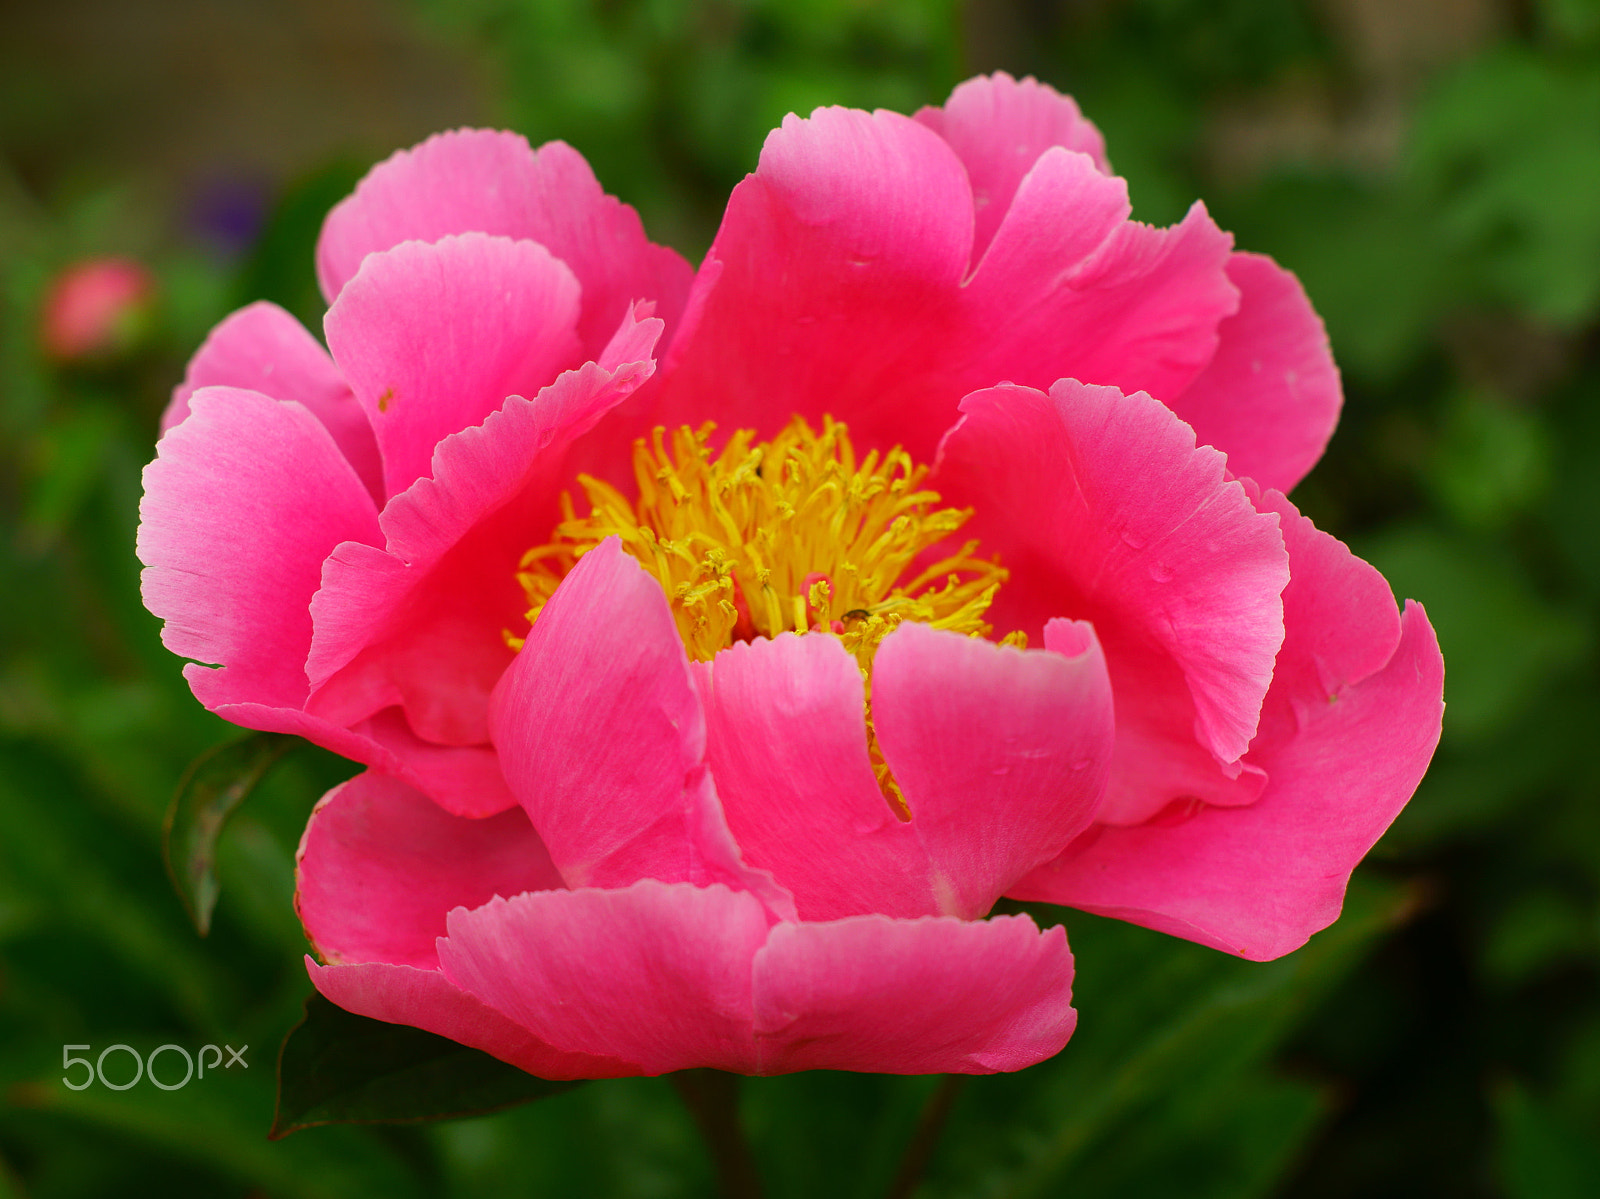 Sony SLT-A65 (SLT-A65V) + Minolta AF 50mm F1.7 sample photo. Pink flower photography